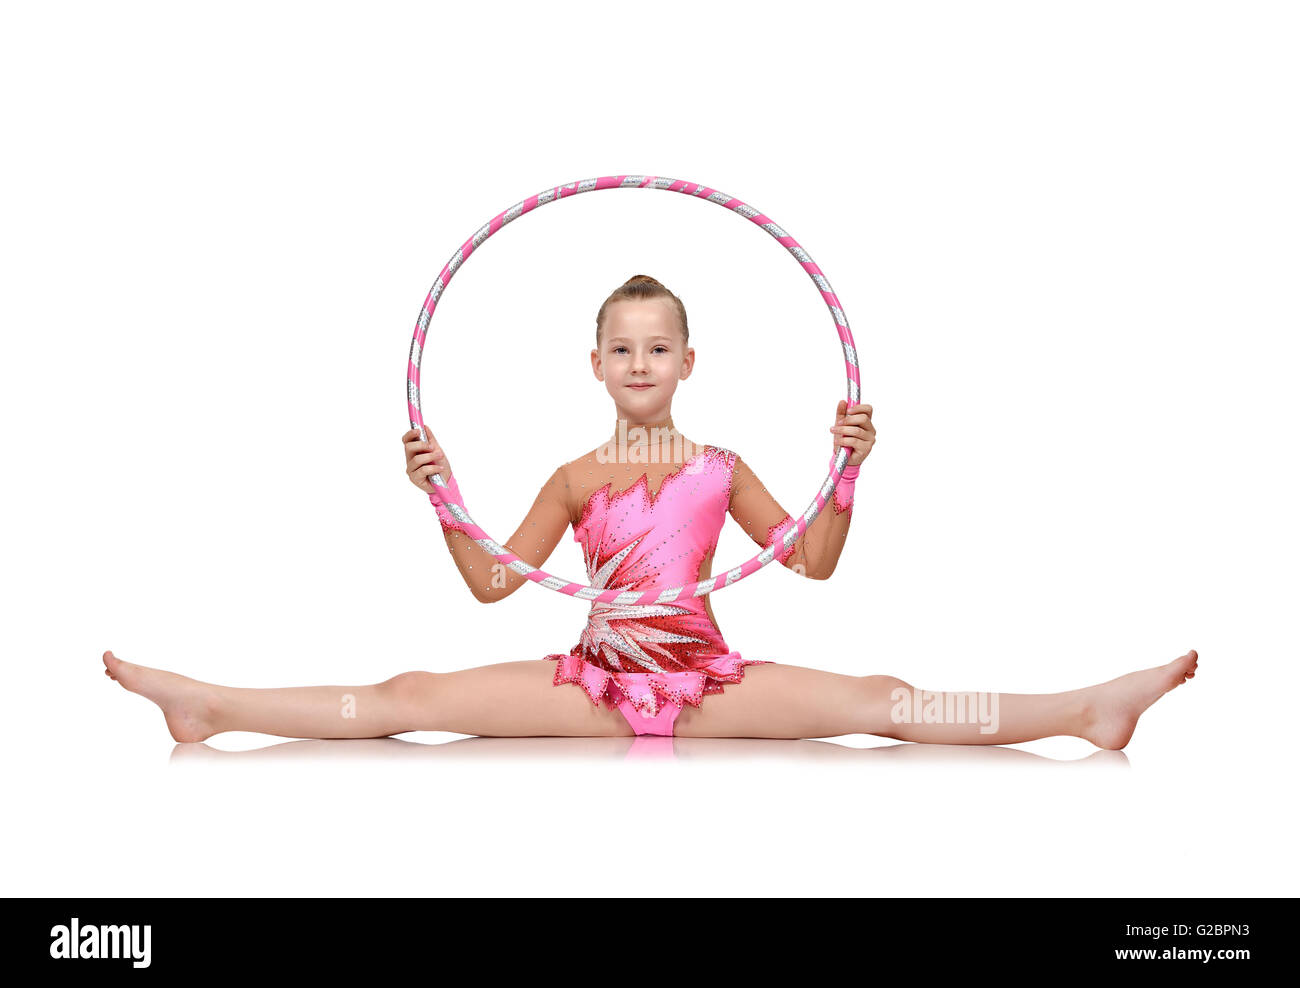 Niña en rosa ropa con hula hoop haciendo gimnasia Fotografía de stock -  Alamy